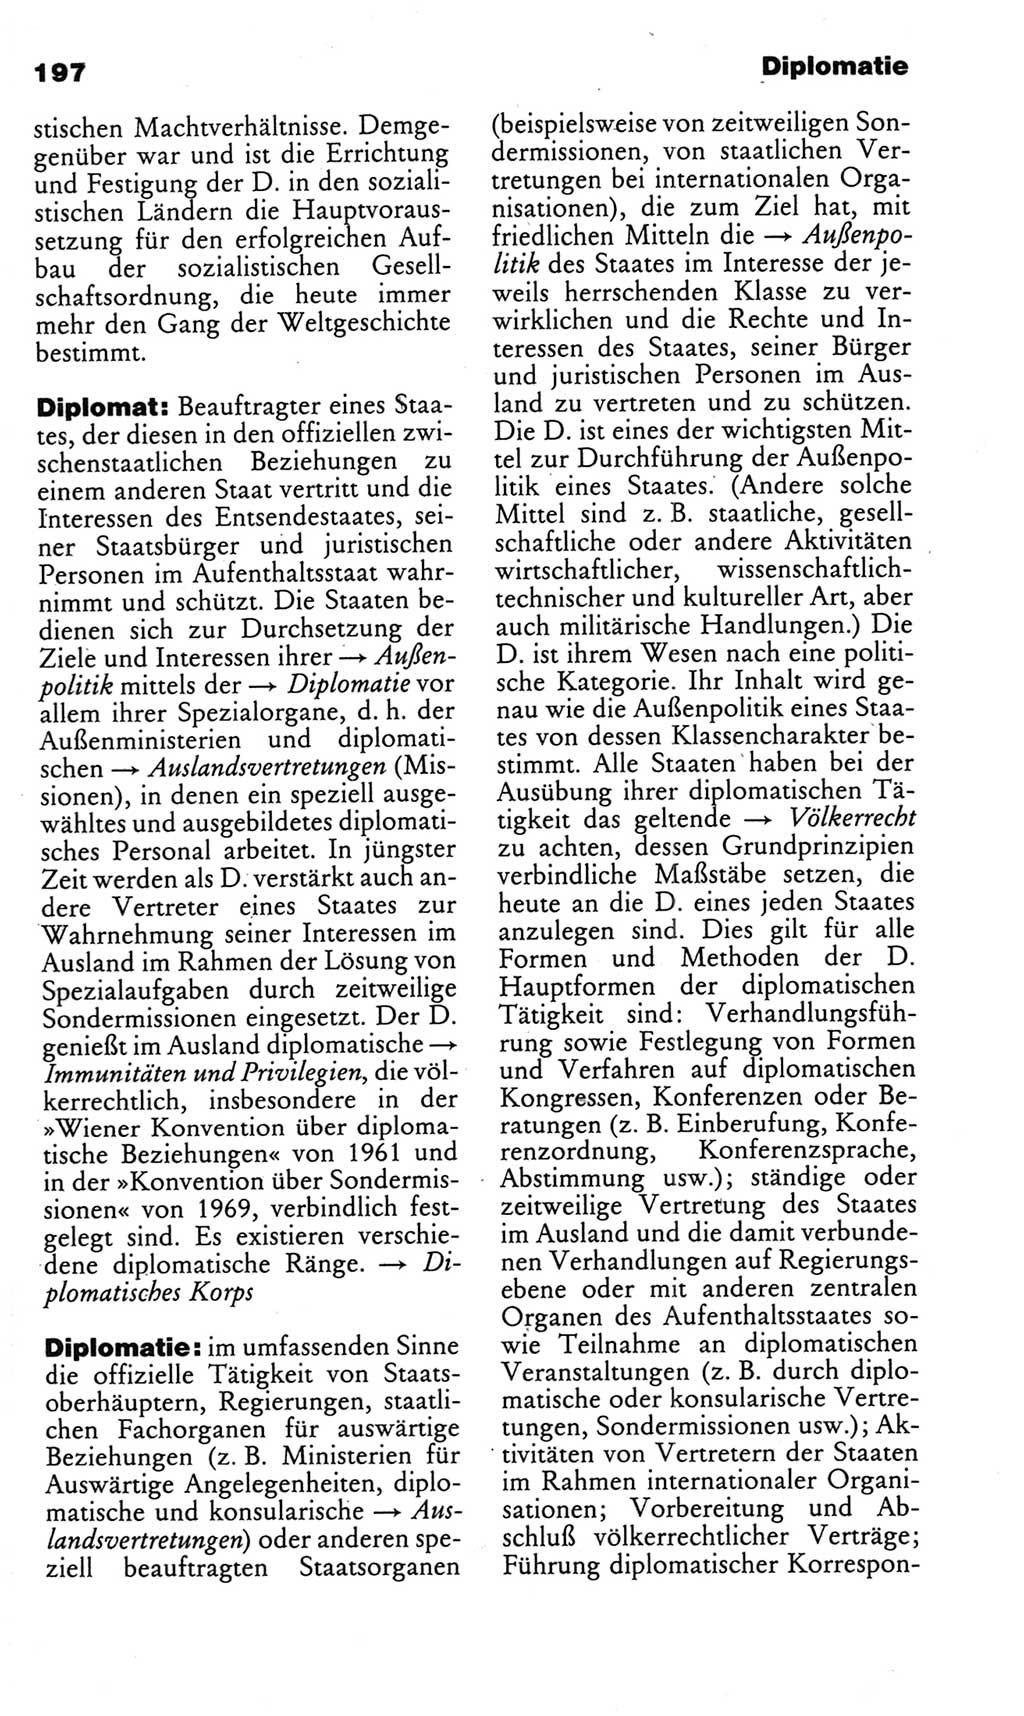 Kleines politisches Wörterbuch [Deutsche Demokratische Republik (DDR)] 1985, Seite 197 (Kl. pol. Wb. DDR 1985, S. 197)